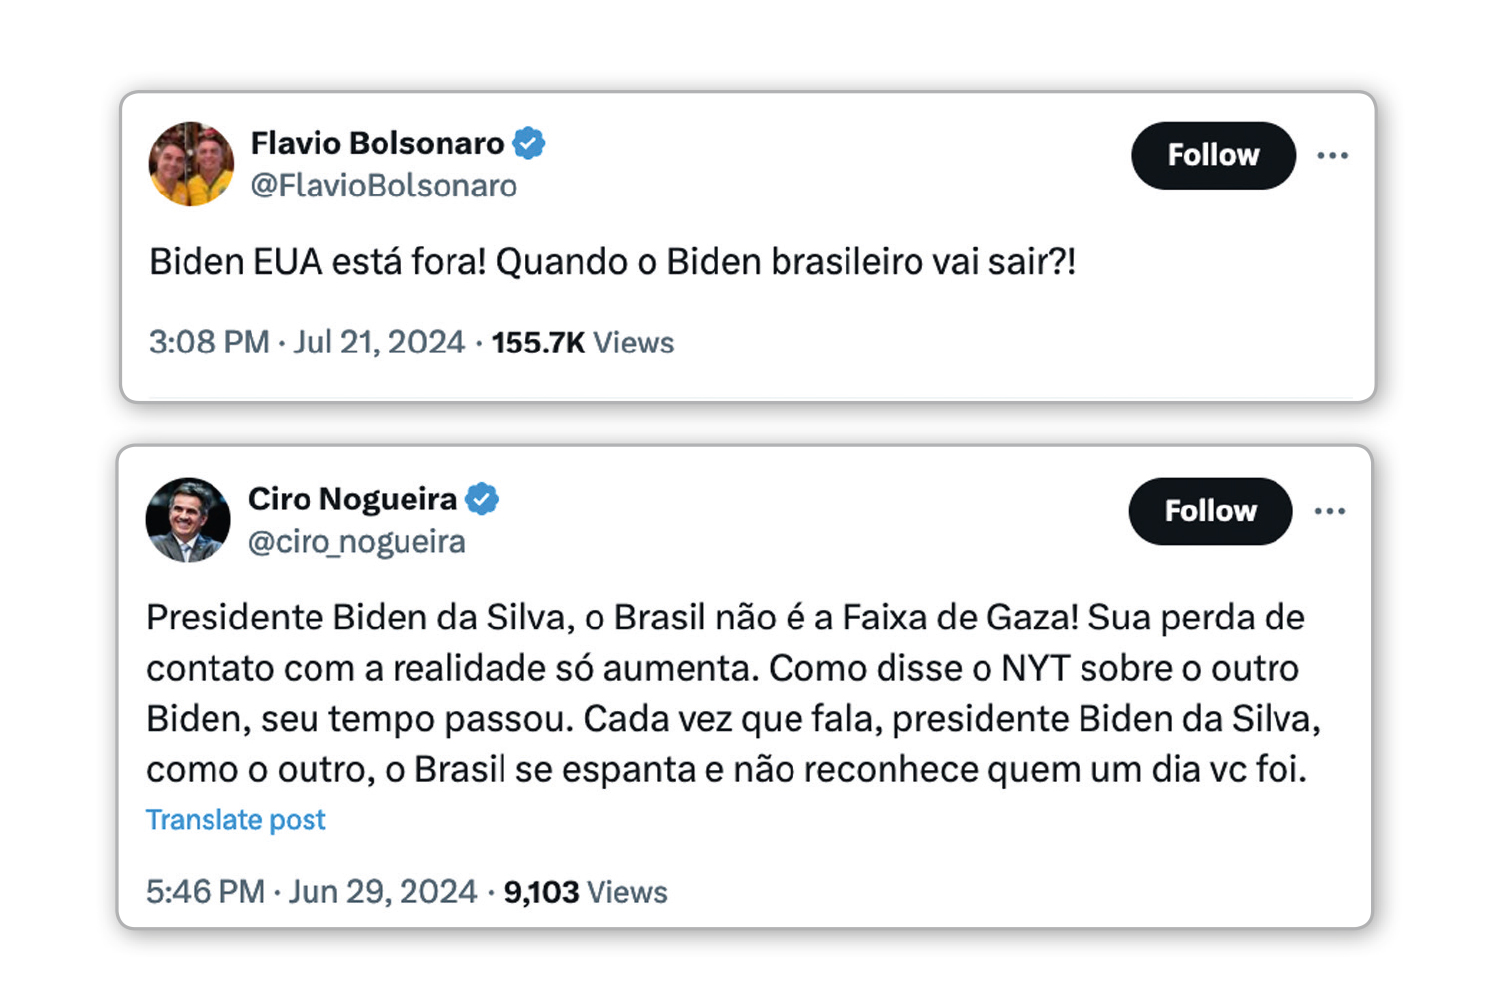 TROCADILHO - Posts de oposição: estratégia é espalhar postagens com o apelido “Biden da Silva” numa clara alusão ao presidente americano